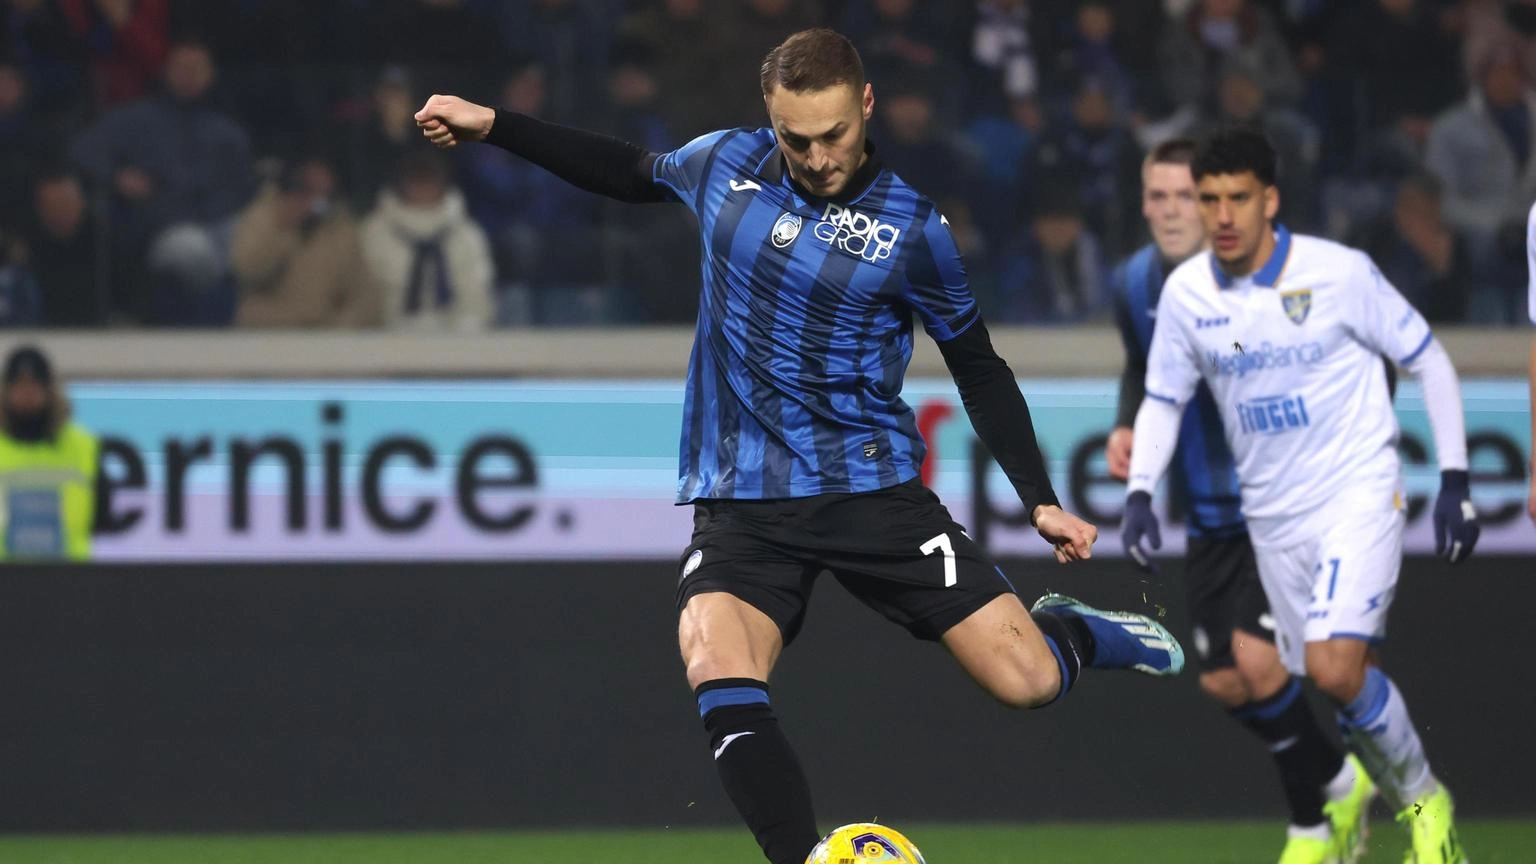 Il centrocampista olandese aveva saltato Udinese e Lazio per una ferita da taglio al malleolo